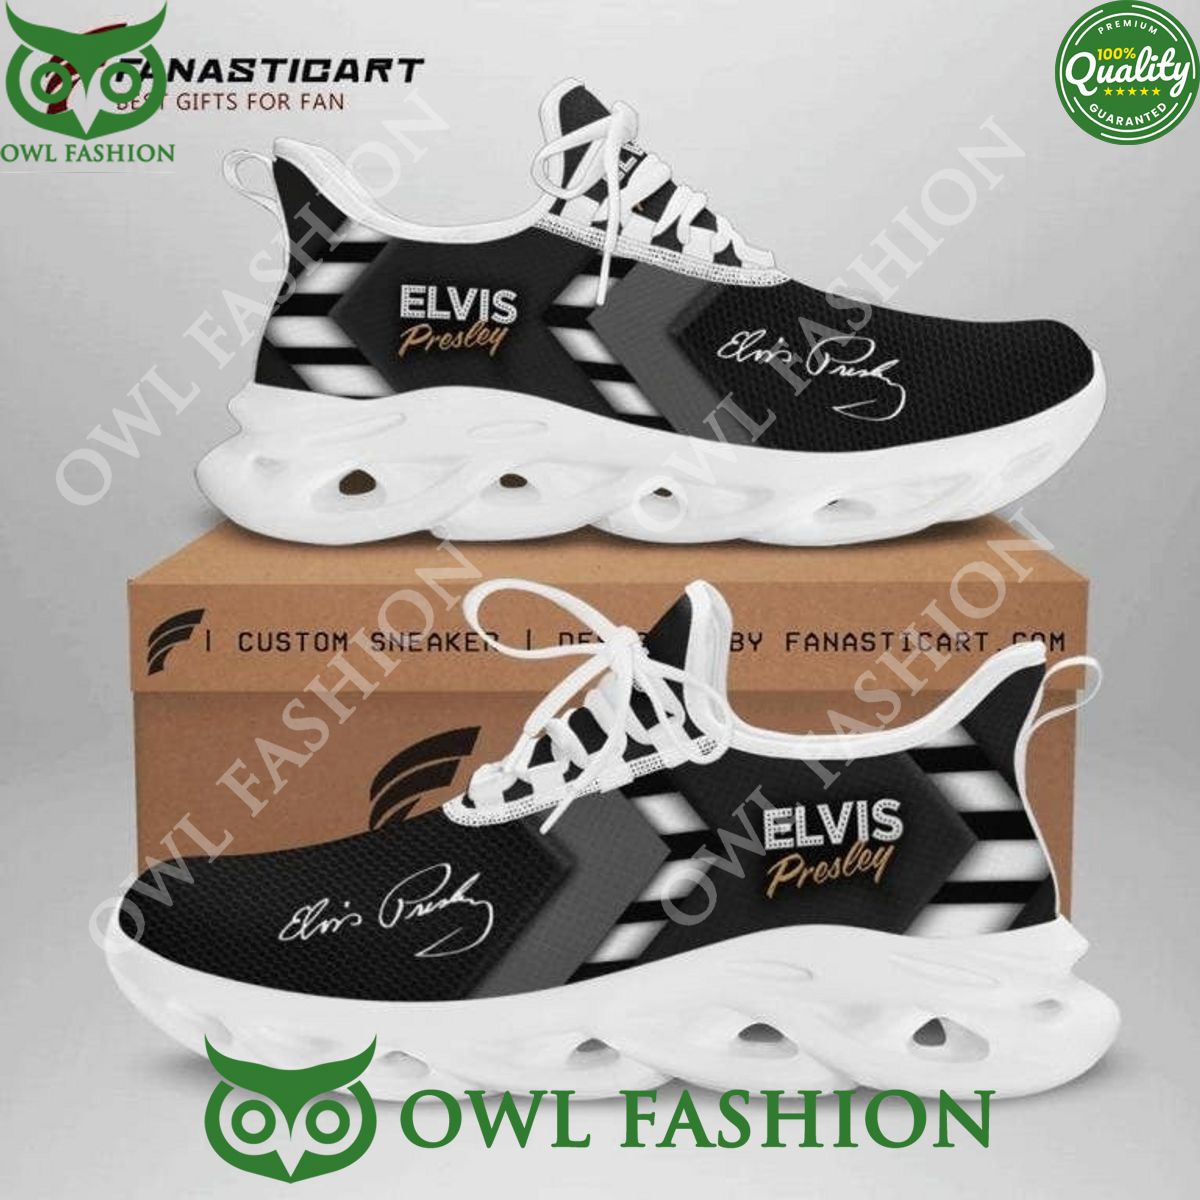 elvis presley black and white max soul sneaker 1 PRCtA.jpg